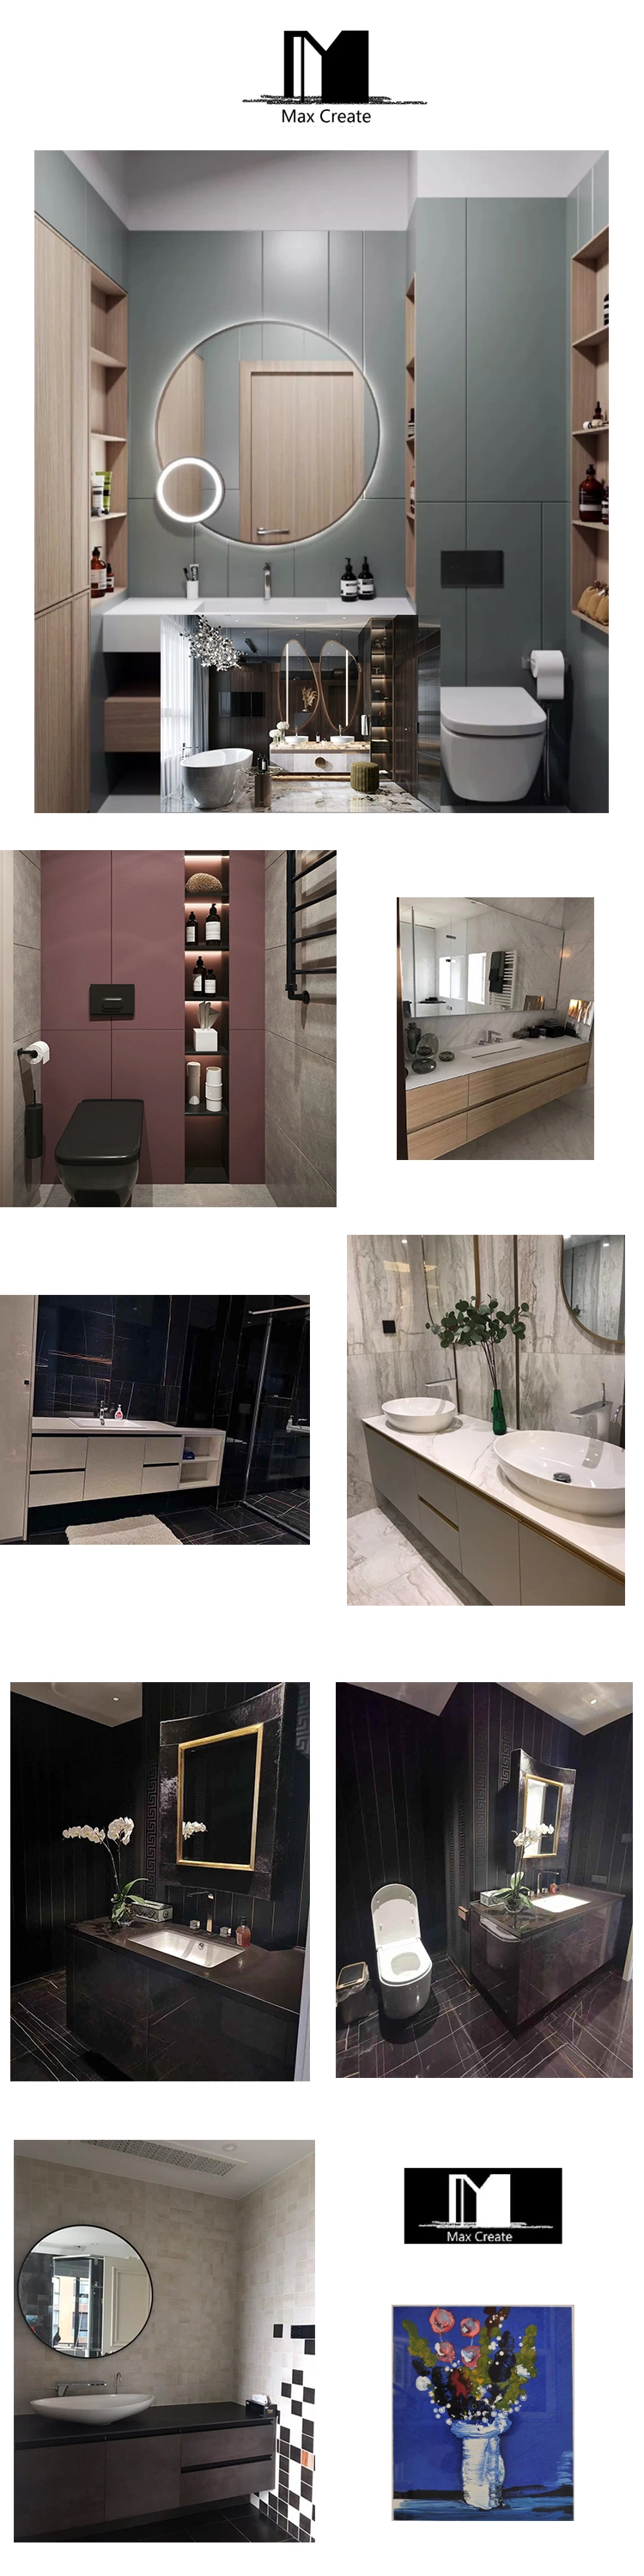 Modern Style High Quality Plywood Wood Bathroom Furniture Bathroom Cabinet